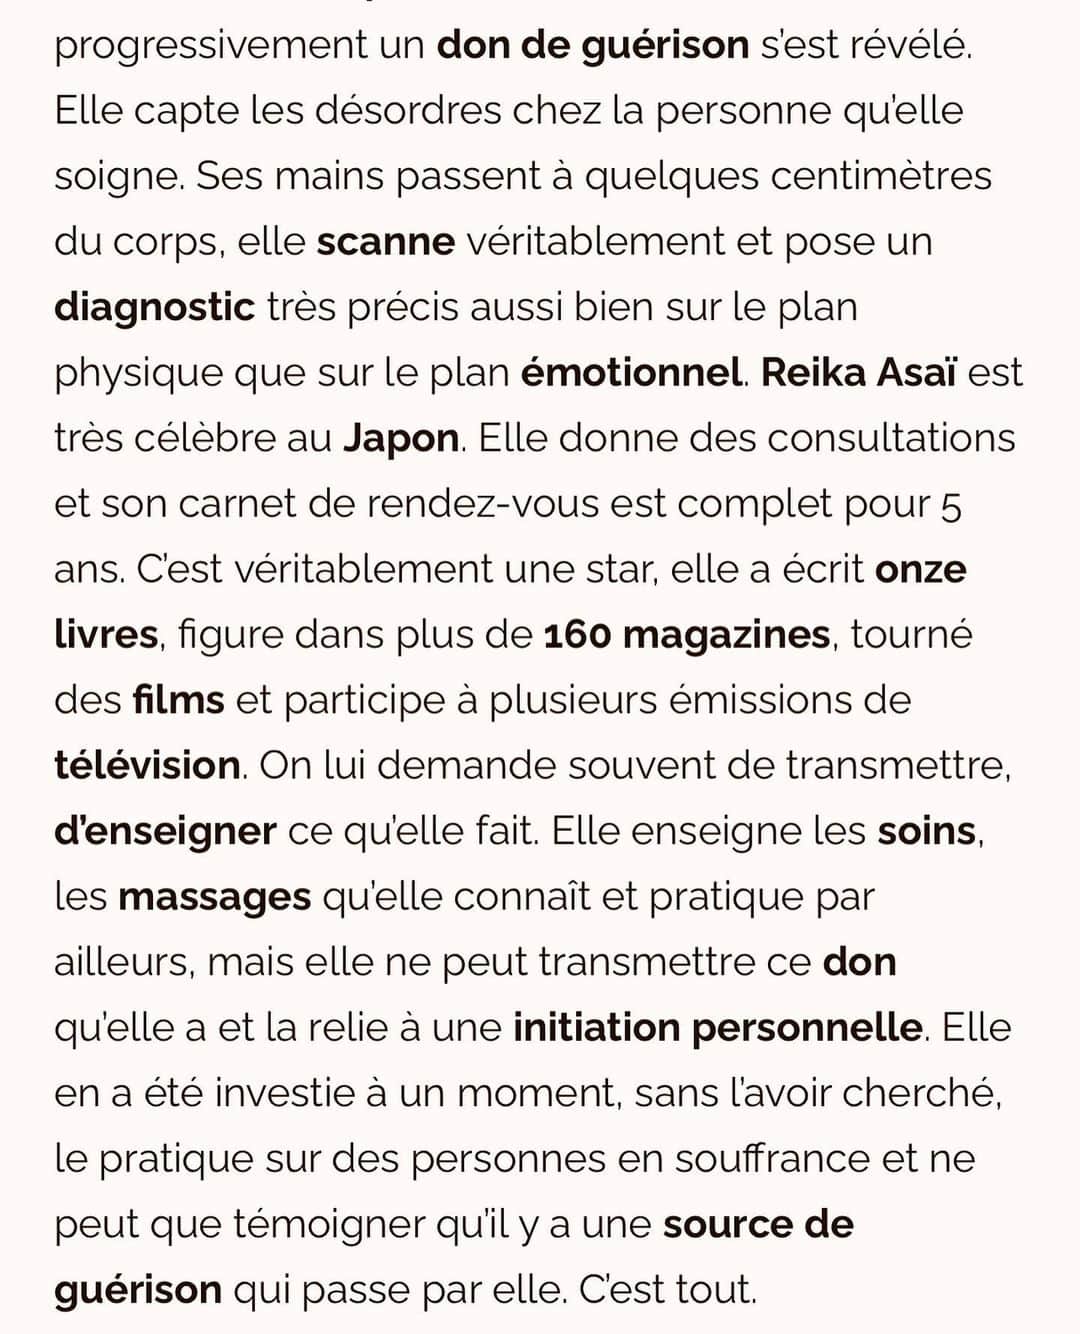 朝井麗華さんのインスタグラム写真 - (朝井麗華Instagram)「フランスの有名なスパ・ウェルネス雑誌に掲載されました！ 『次元を超えた未来の治療法』と言って頂けてる🥹✨ Google翻訳まんまで意味不明な部分がありますがご一読いただけたら嬉しいです［特に後半を！］  https://wellnessbygalyaortega.com/2023/09/26/reika-asai-un-guide-vers-la-guerison-du-corps-et-de-lame/  《朝井麗華、身体と魂を癒すガイドブック》  【賜物の啓示】  当初、レイカがこの高度な治療を受ける素地は何もなかったようだ。しかし20年ほど前、彼女は大きな試練を経験した。その結果、彼女の人生はセラピーを中心に回るようになった。彼女はオステオパシー、マッサージ、鍼のような手技治療をマスターし、現在はそれを教えている。さまざまな代替療法をしっかり学んだ。そして次第に、癒しの才能が姿を現した。彼女は治療している人の不調を感じ取る。身体からほんの数センチ手を離しただけで、彼女は身体的にも精神的にも、実に正確にスキャンし、診断を下すことができる。朝井麗華は日本ではとても有名だ。彼女はコンサルを行い、5年間予約はいっぱいだ。彼女は本物のスターであり、11冊の本を書き、160以上の雑誌に登場し、映画を撮り、いくつかのテレビ番組に出演している。彼女はしばしば、自分のやっていることを伝えたり教えたりしてほしいと頼まれる。彼女は自分が知っていて実践しているトリートメントやマッサージを教えるが、自分が持っている才能を伝授したり、それを個人的なイニシエーションに結びつけることはできない。彼女はあるとき、それを探し求めなくても、それを授かり、苦しんでいる人々にそれを実践している。それはすべて、  【他者への献身】  17年前に自分の才能を明らかにして以来、レイカは日本で彼女の周囲のケアに専念しました。ここ何年もこれです。彼女にとって重要なことは、このエネルギーを分配し、他の人に良いことをすることです。それから最近、彼女はヨーロッパに来たがりました。彼女はフランス（パリ、ニース、カンヌ、モナコ）からスタートしました。彼女はケアを提供し、コミュニケーションを取り、来年に向けてより長く滞在して治癒を求める患者にケアを提供する「ツアー」の準備をしている。それは今年訪問される特定の宮殿に安定的に配置される予定であり、その時点で任命の機会があるでしょう。その目的は、このエネルギーを必要とする人々に分配することです。  【他の場所から来た未来の治療法】  このようなヒーリングについて、私たちは自問自答することができる。どんなに高度であっても、学校で学ぶ技術ではないからだ。レイカの卓越した施術を受けた以上、一人の人間にすべてがかかっているのだとしたら、彼女が発信したもので私たちは何ができるのだろうか？よく考えてみると、私たちは癒しの世界は変わりつつあり、開かれつつあるという結論に至らざるを得ません。 私たちは、心と身体の全体に働きかけるホリスティックなトリートメントを体験しました。これらは本質的にはアジアの伝統医学に由来ています。そしてそれは教えることができ、実践は非常に特別で構造化されていますが、セラピスト側の正確なポジショニングが必要です。レイカが実践していることは、全体的な次元を統合します。しかし、彼女はそれを超えて、シャーマニズムや他の場所からの微細なエネルギーの伝達に関係するアプローチを取り入れている。  彼女の手は肉体的、感情的、精神的、スピリチュアルな障害を捉えます。そして、彼女の個人的な力を通じて、彼らが治癒するまで変容させます。これはすごいことだ。これは大学では学べないので、レイカは私たちの世界がこの種の治療を受け入れる準備ができていることを示す道を開いているのだろう。レイカはまさにこれから発展する未来の治療法です。  #Reikamethod #traumarelease #traumatherapy #bodymindspirit #subconsciousmind #Tuina  #lifetherapy #Lifetherapist #Orientalmedicine #France #Japan #トラウマリリース #トラウマ #トラウマセラピー #ライフセラピー」10月8日 9時35分 - reikaasai